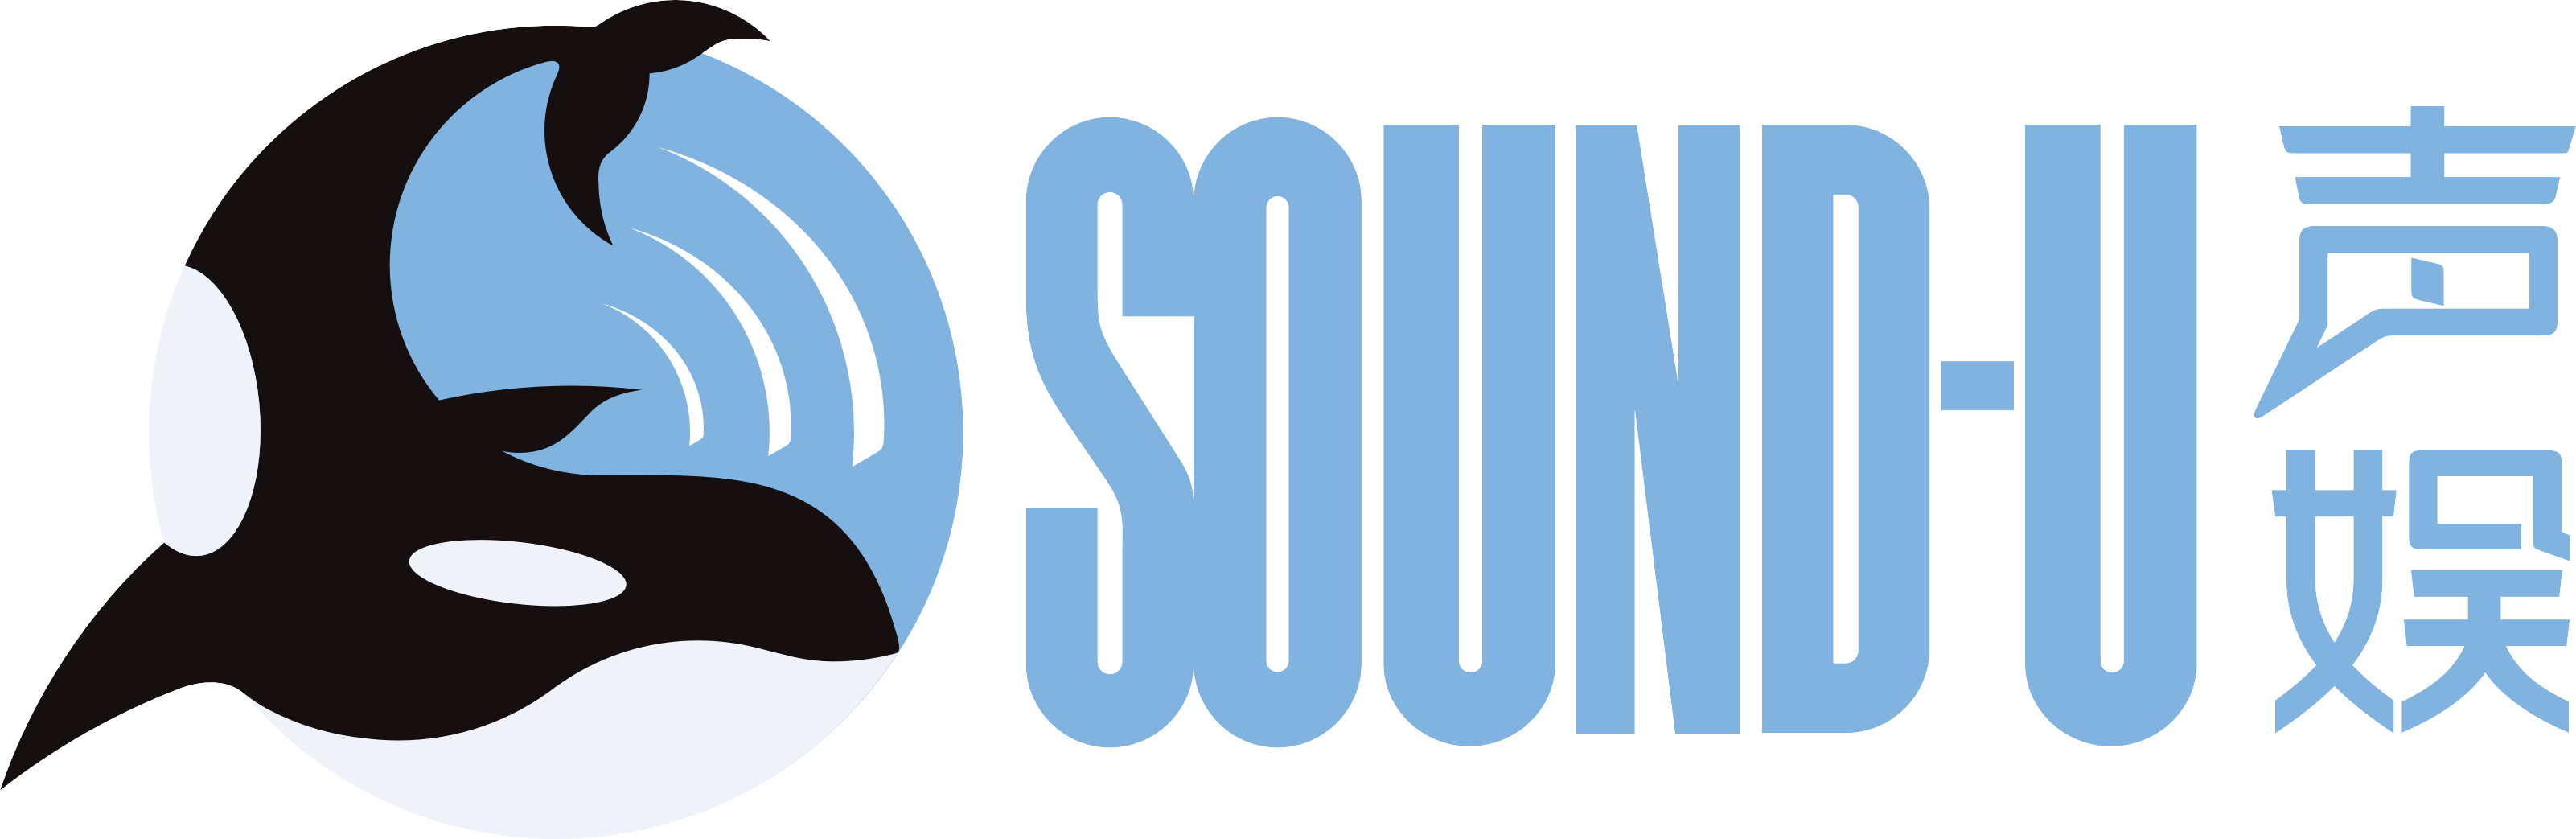 SOUND-U.png